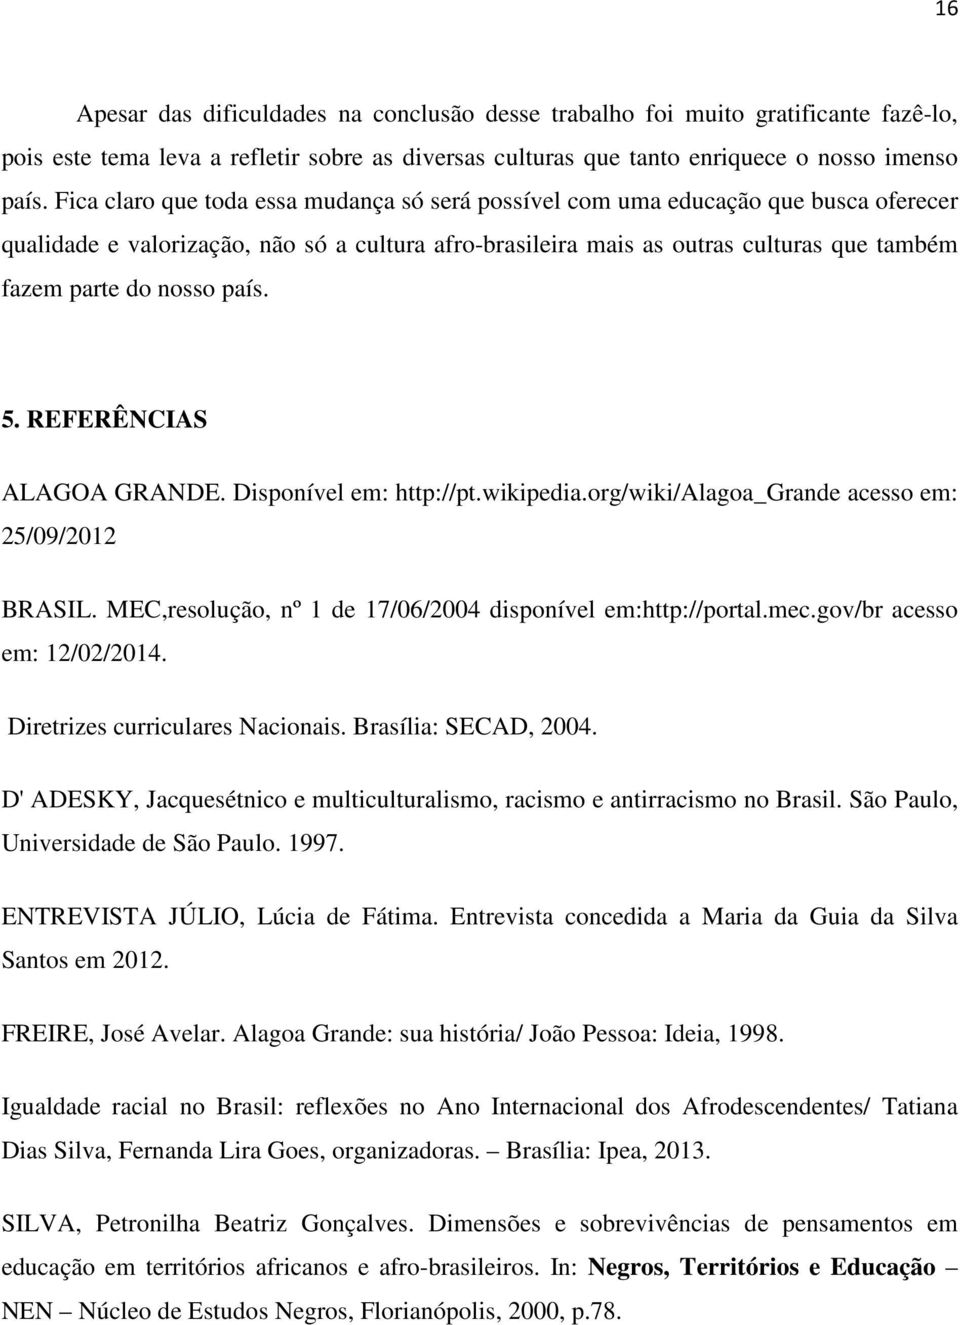 país. 5. REFERÊNCIAS ALAGOA GRANDE. Disponível em: http://pt.wikipedia.org/wiki/alagoa_grande acesso em: 25/09/2012 BRASIL. MEC,resolução, nº 1 de 17/06/2004 disponível em:http://portal.mec.